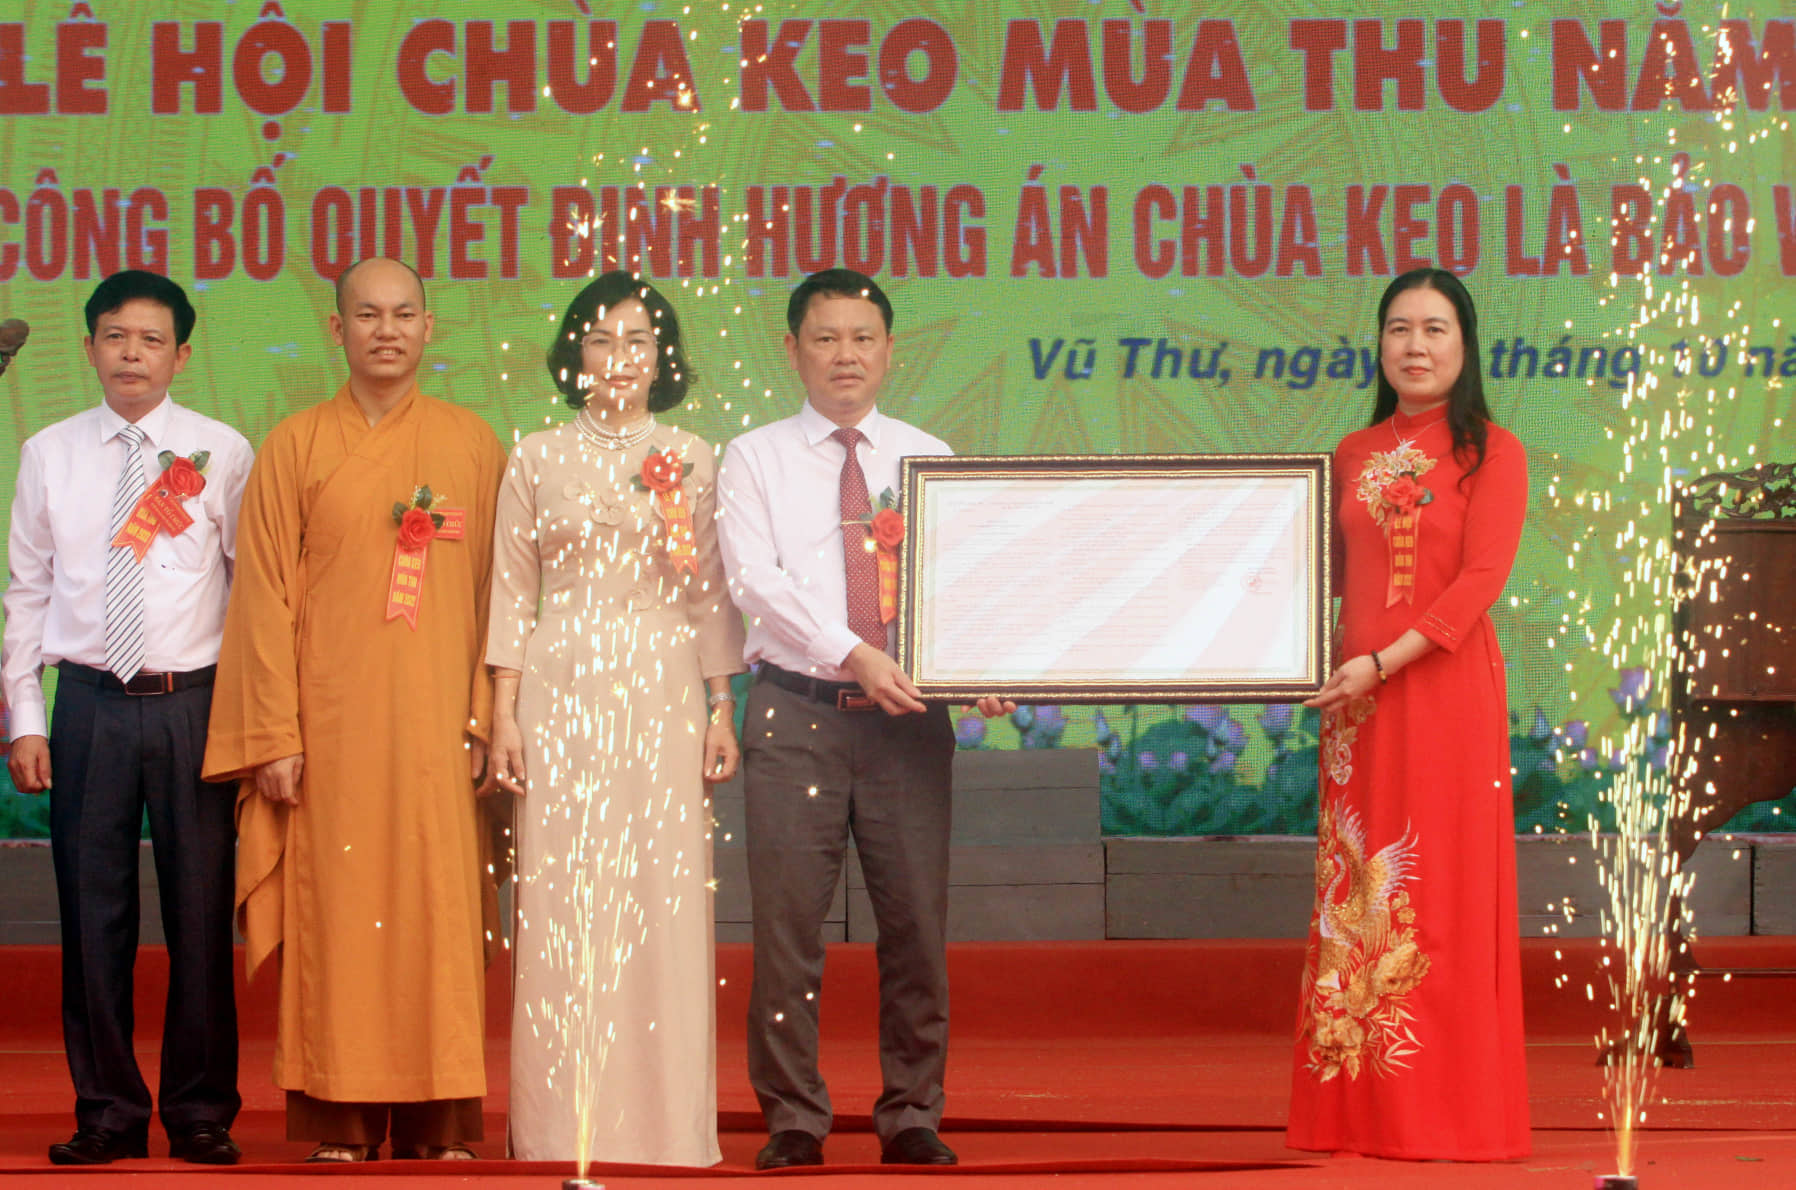 Trao quyết định công nhận Hương án chùa Keo là bảo vật quốc gia.